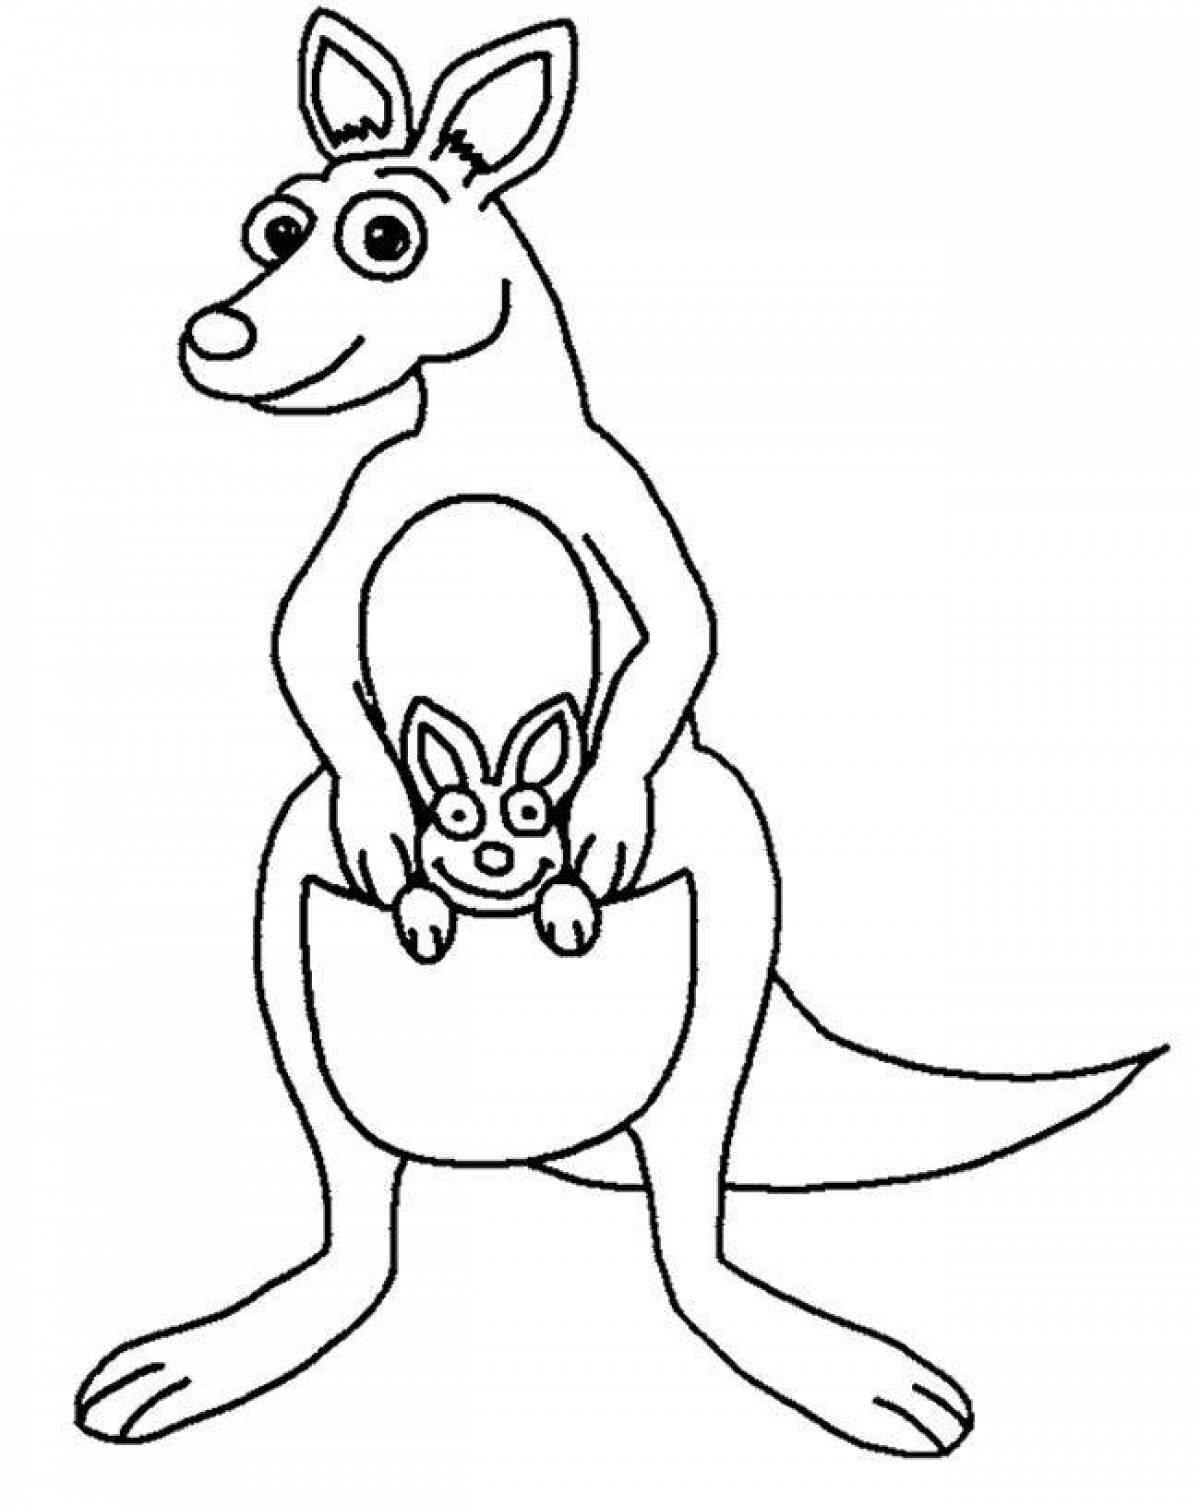 Забавная раскраска кенгуру для детей